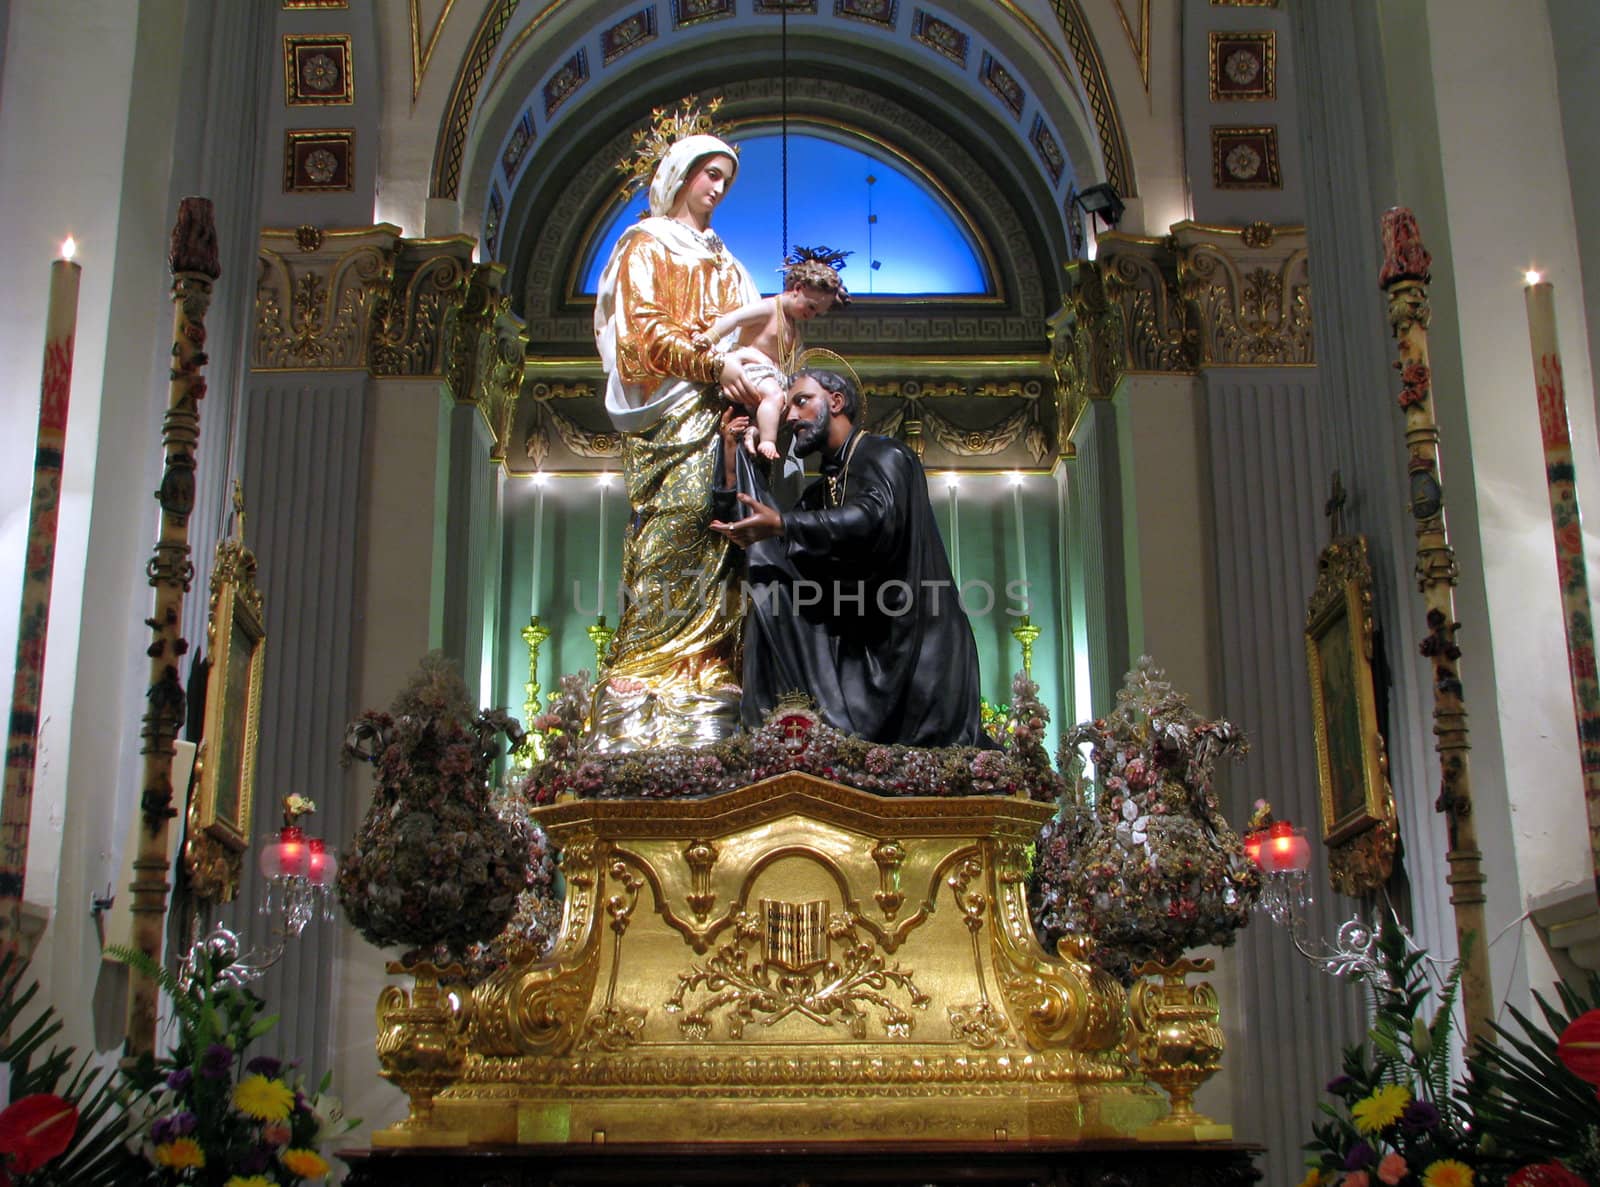 The statue of Saint Cajetan in Hamrun, Malta.